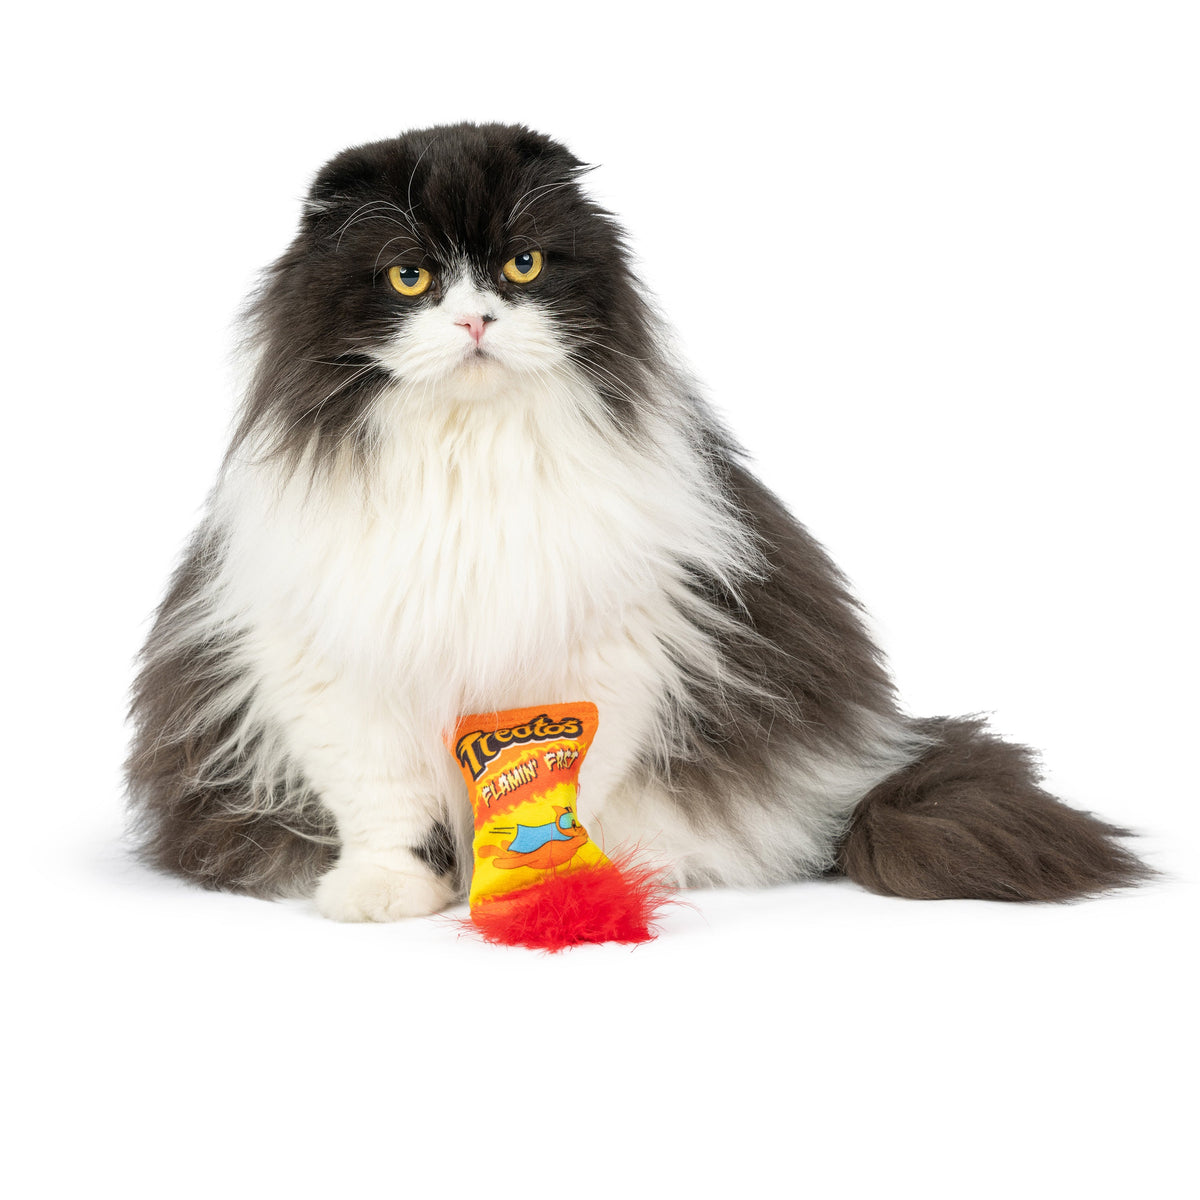 Treatos Snacks Cat Toy